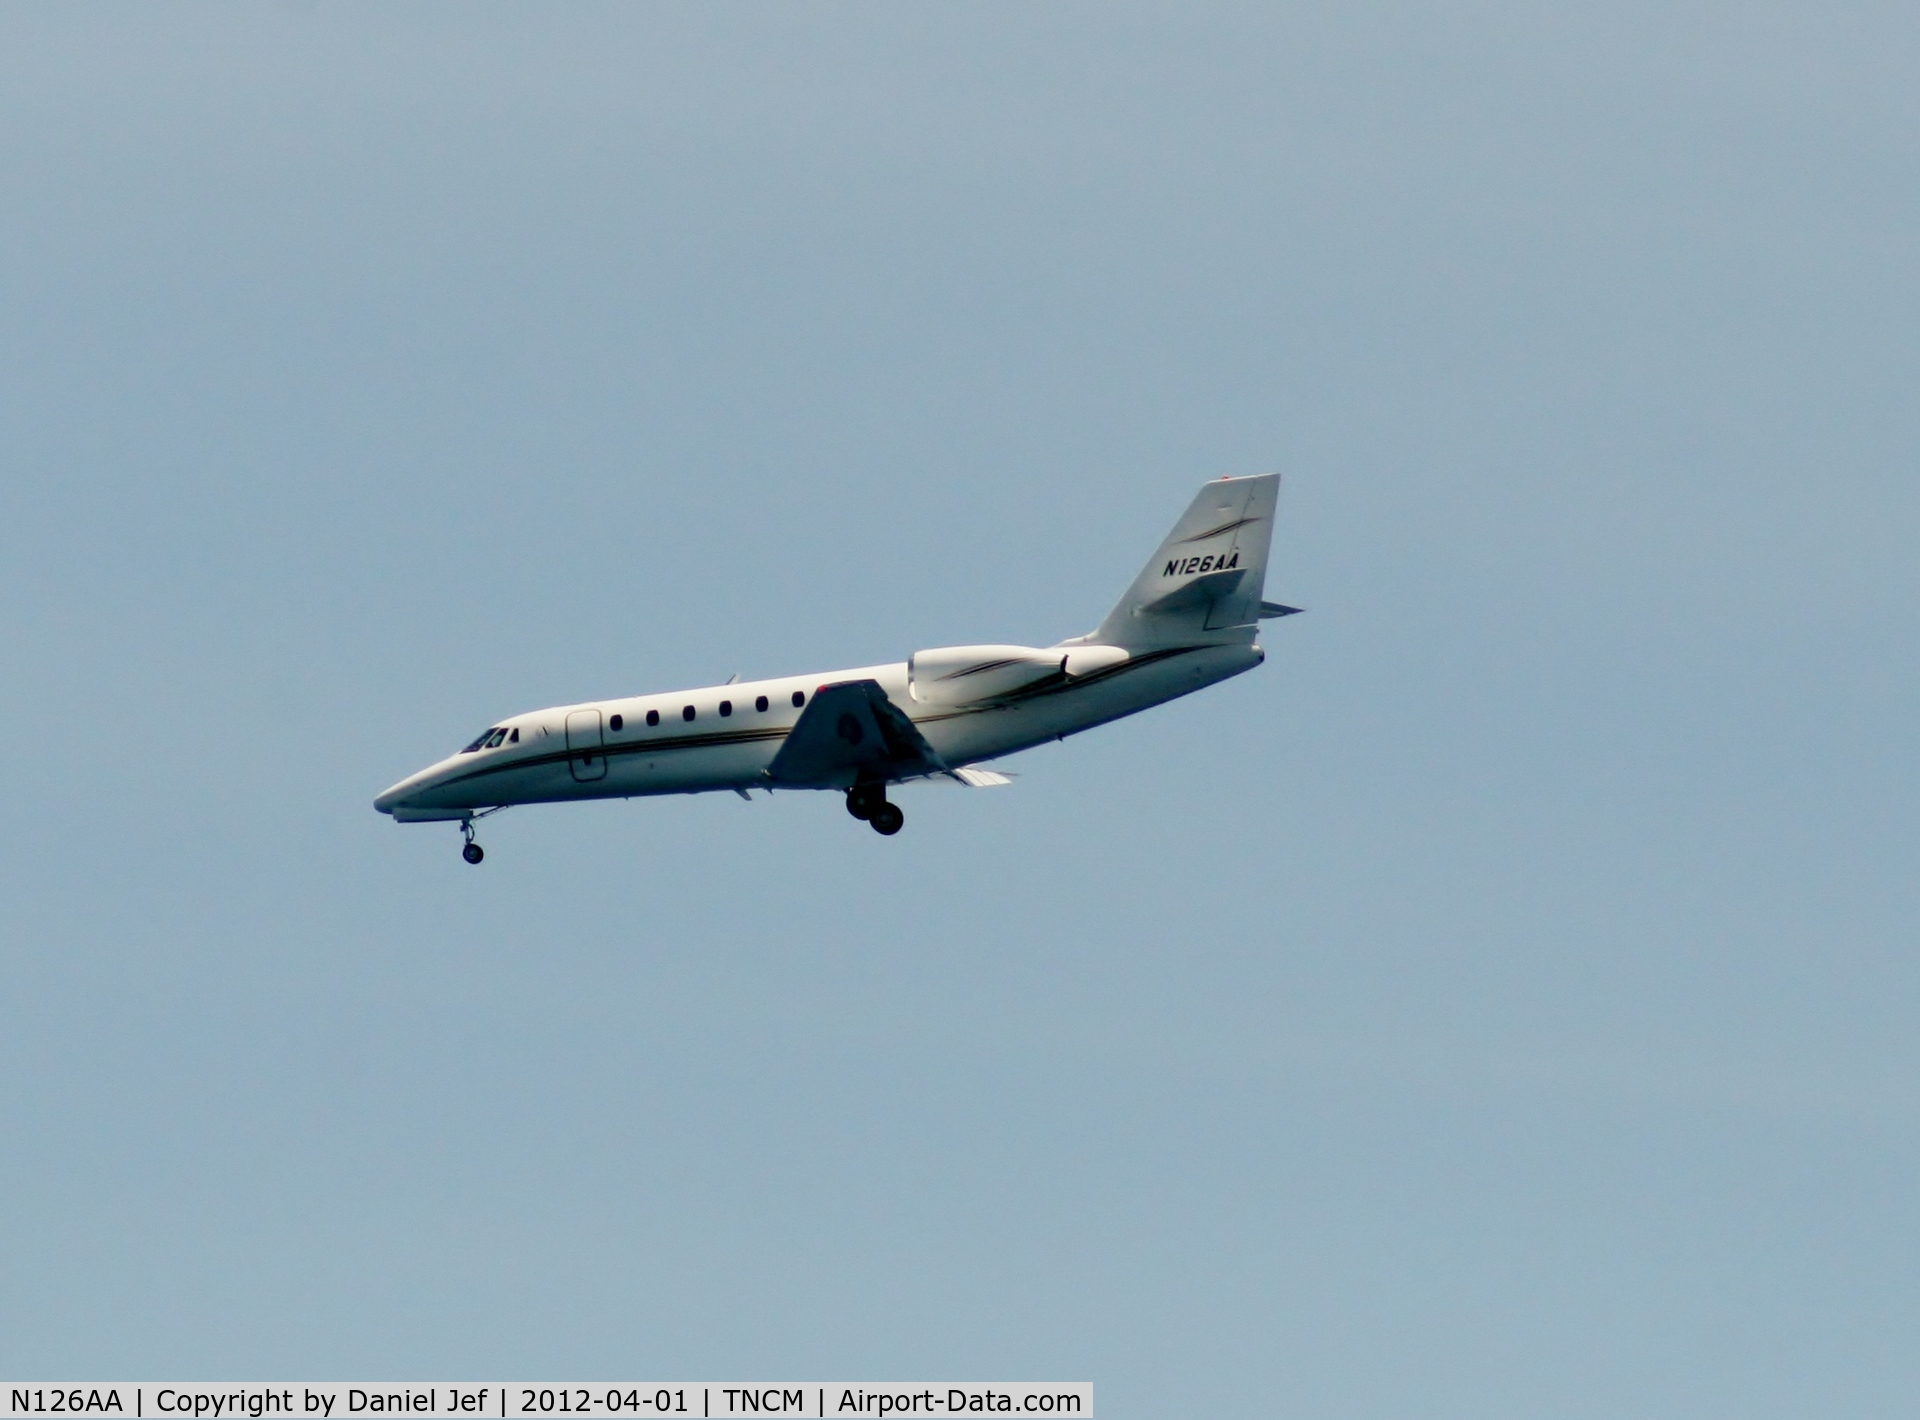 N126AA, 2005 Cessna 680 Citation Sovereign C/N 680-0037, N126AA